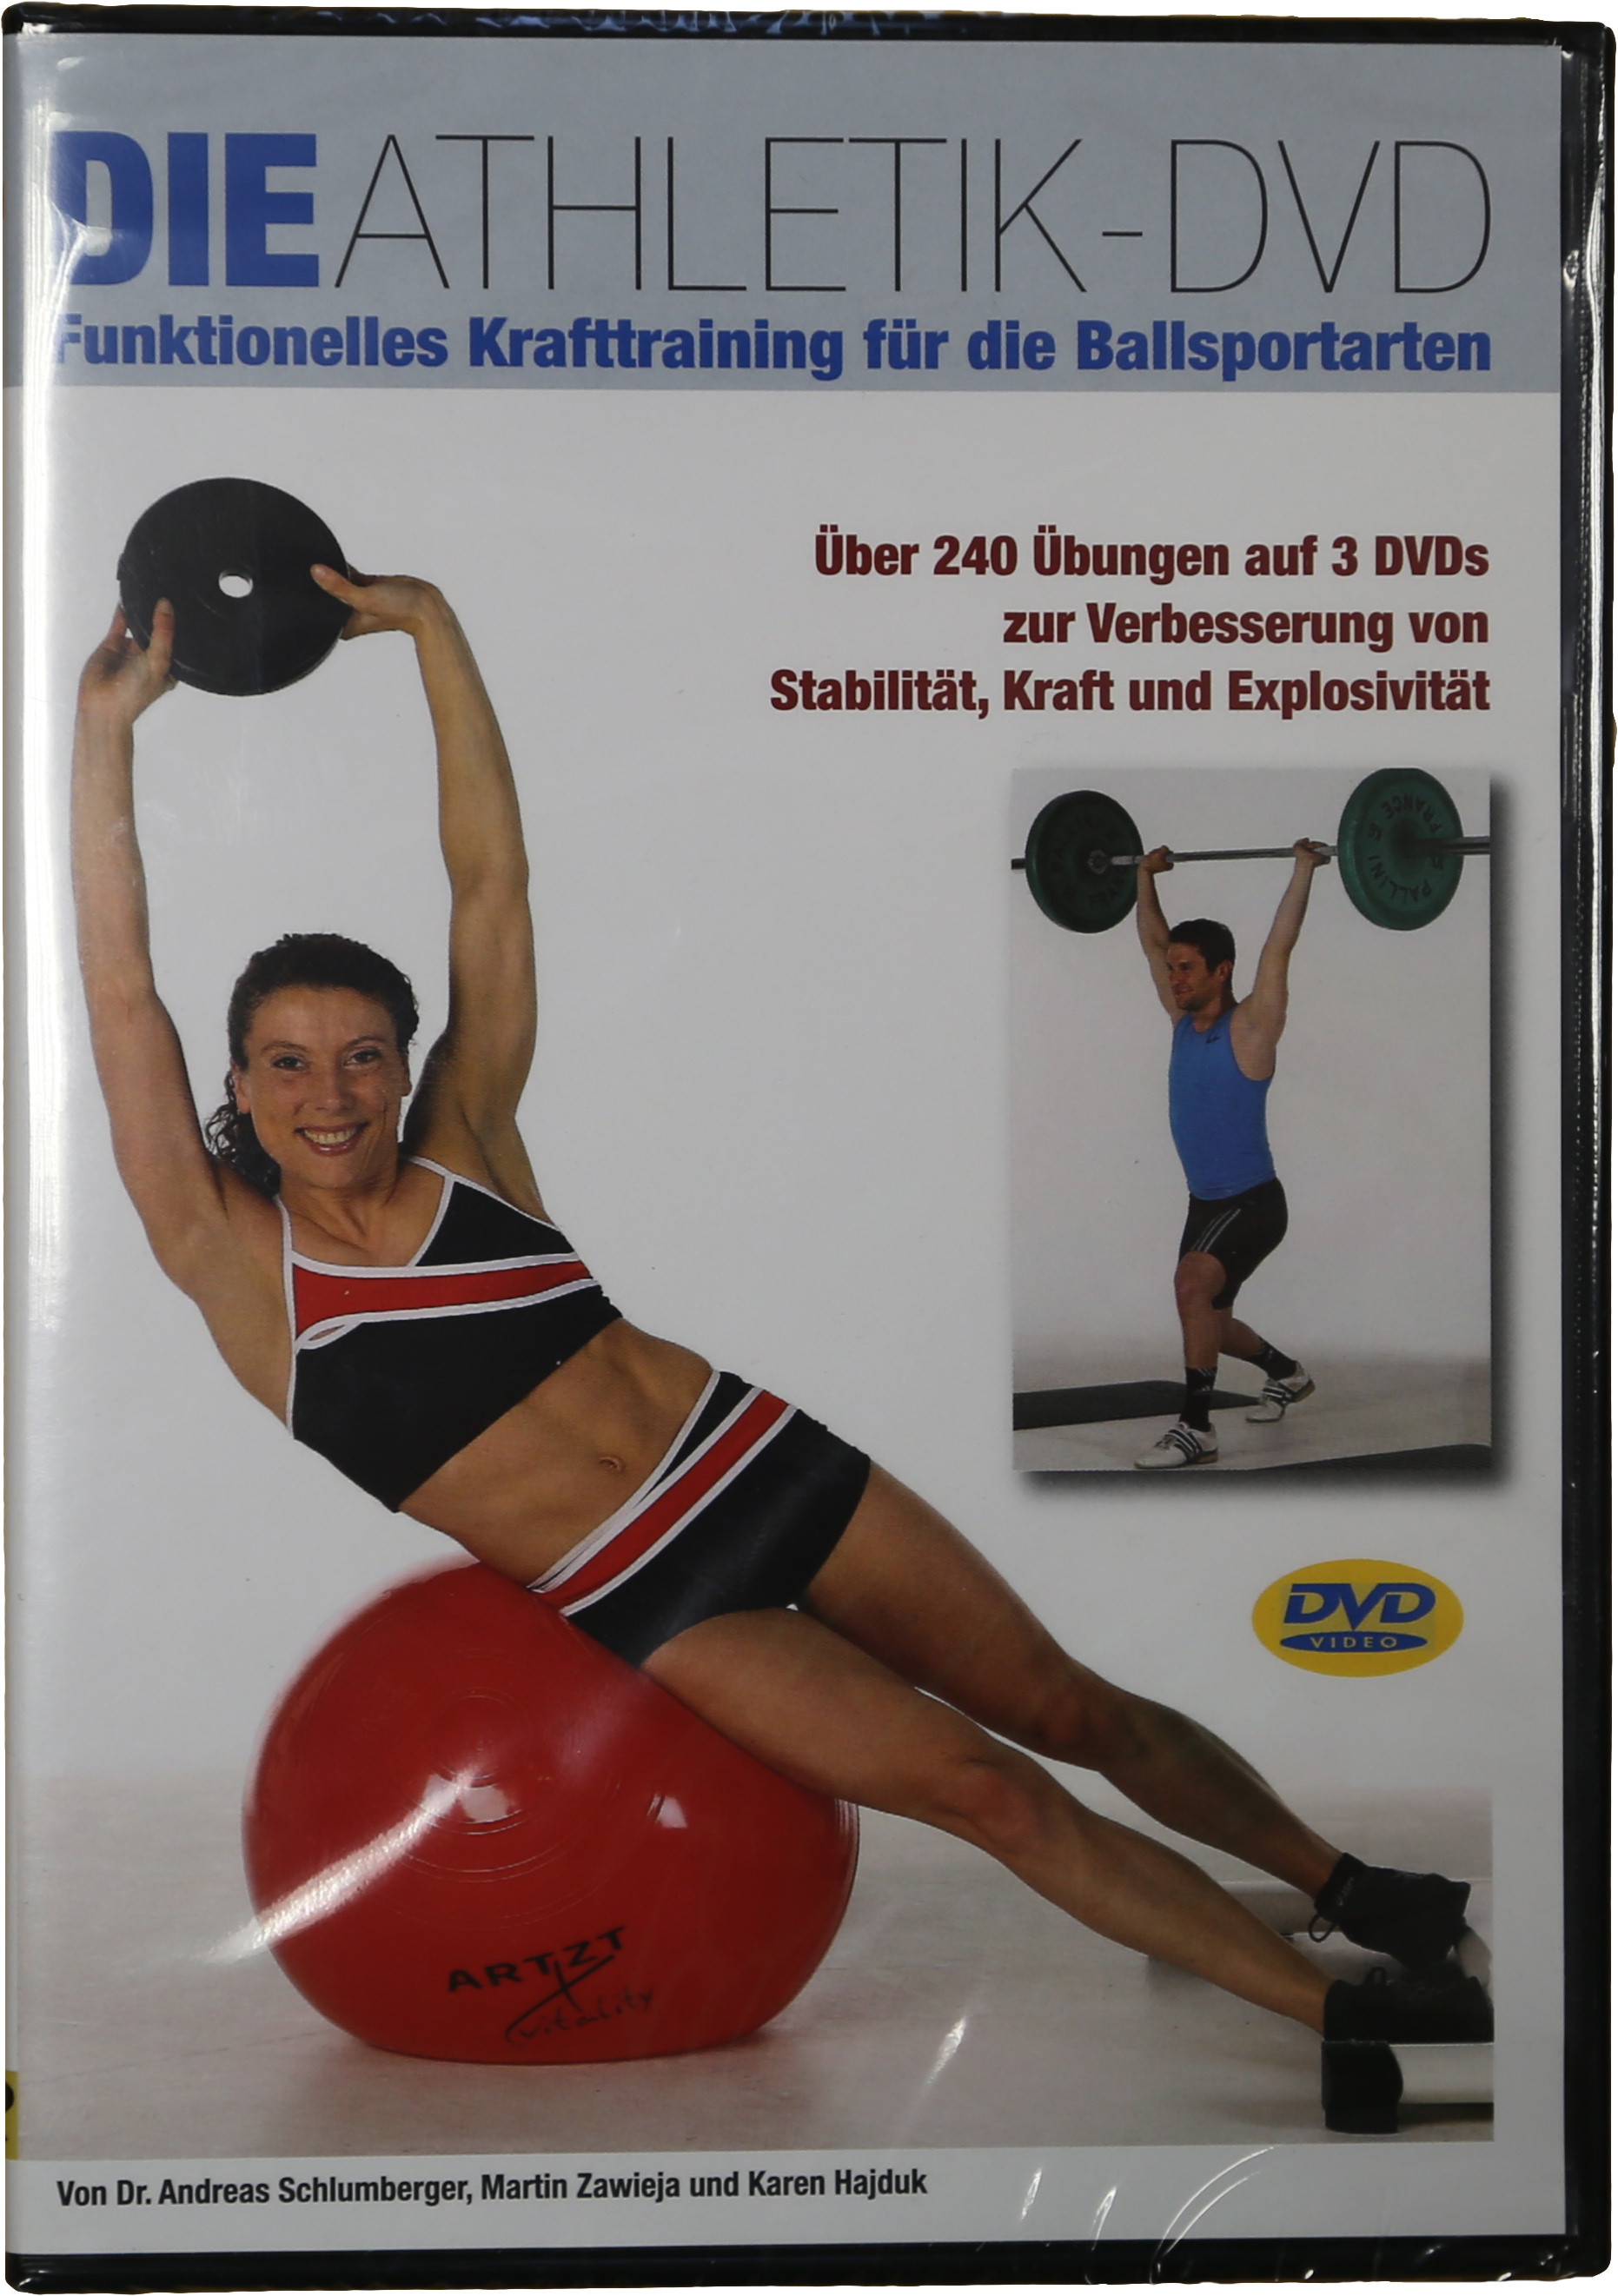 Die Athletik DVD (Funktionelles Krafttraining für die Ballsportarten)